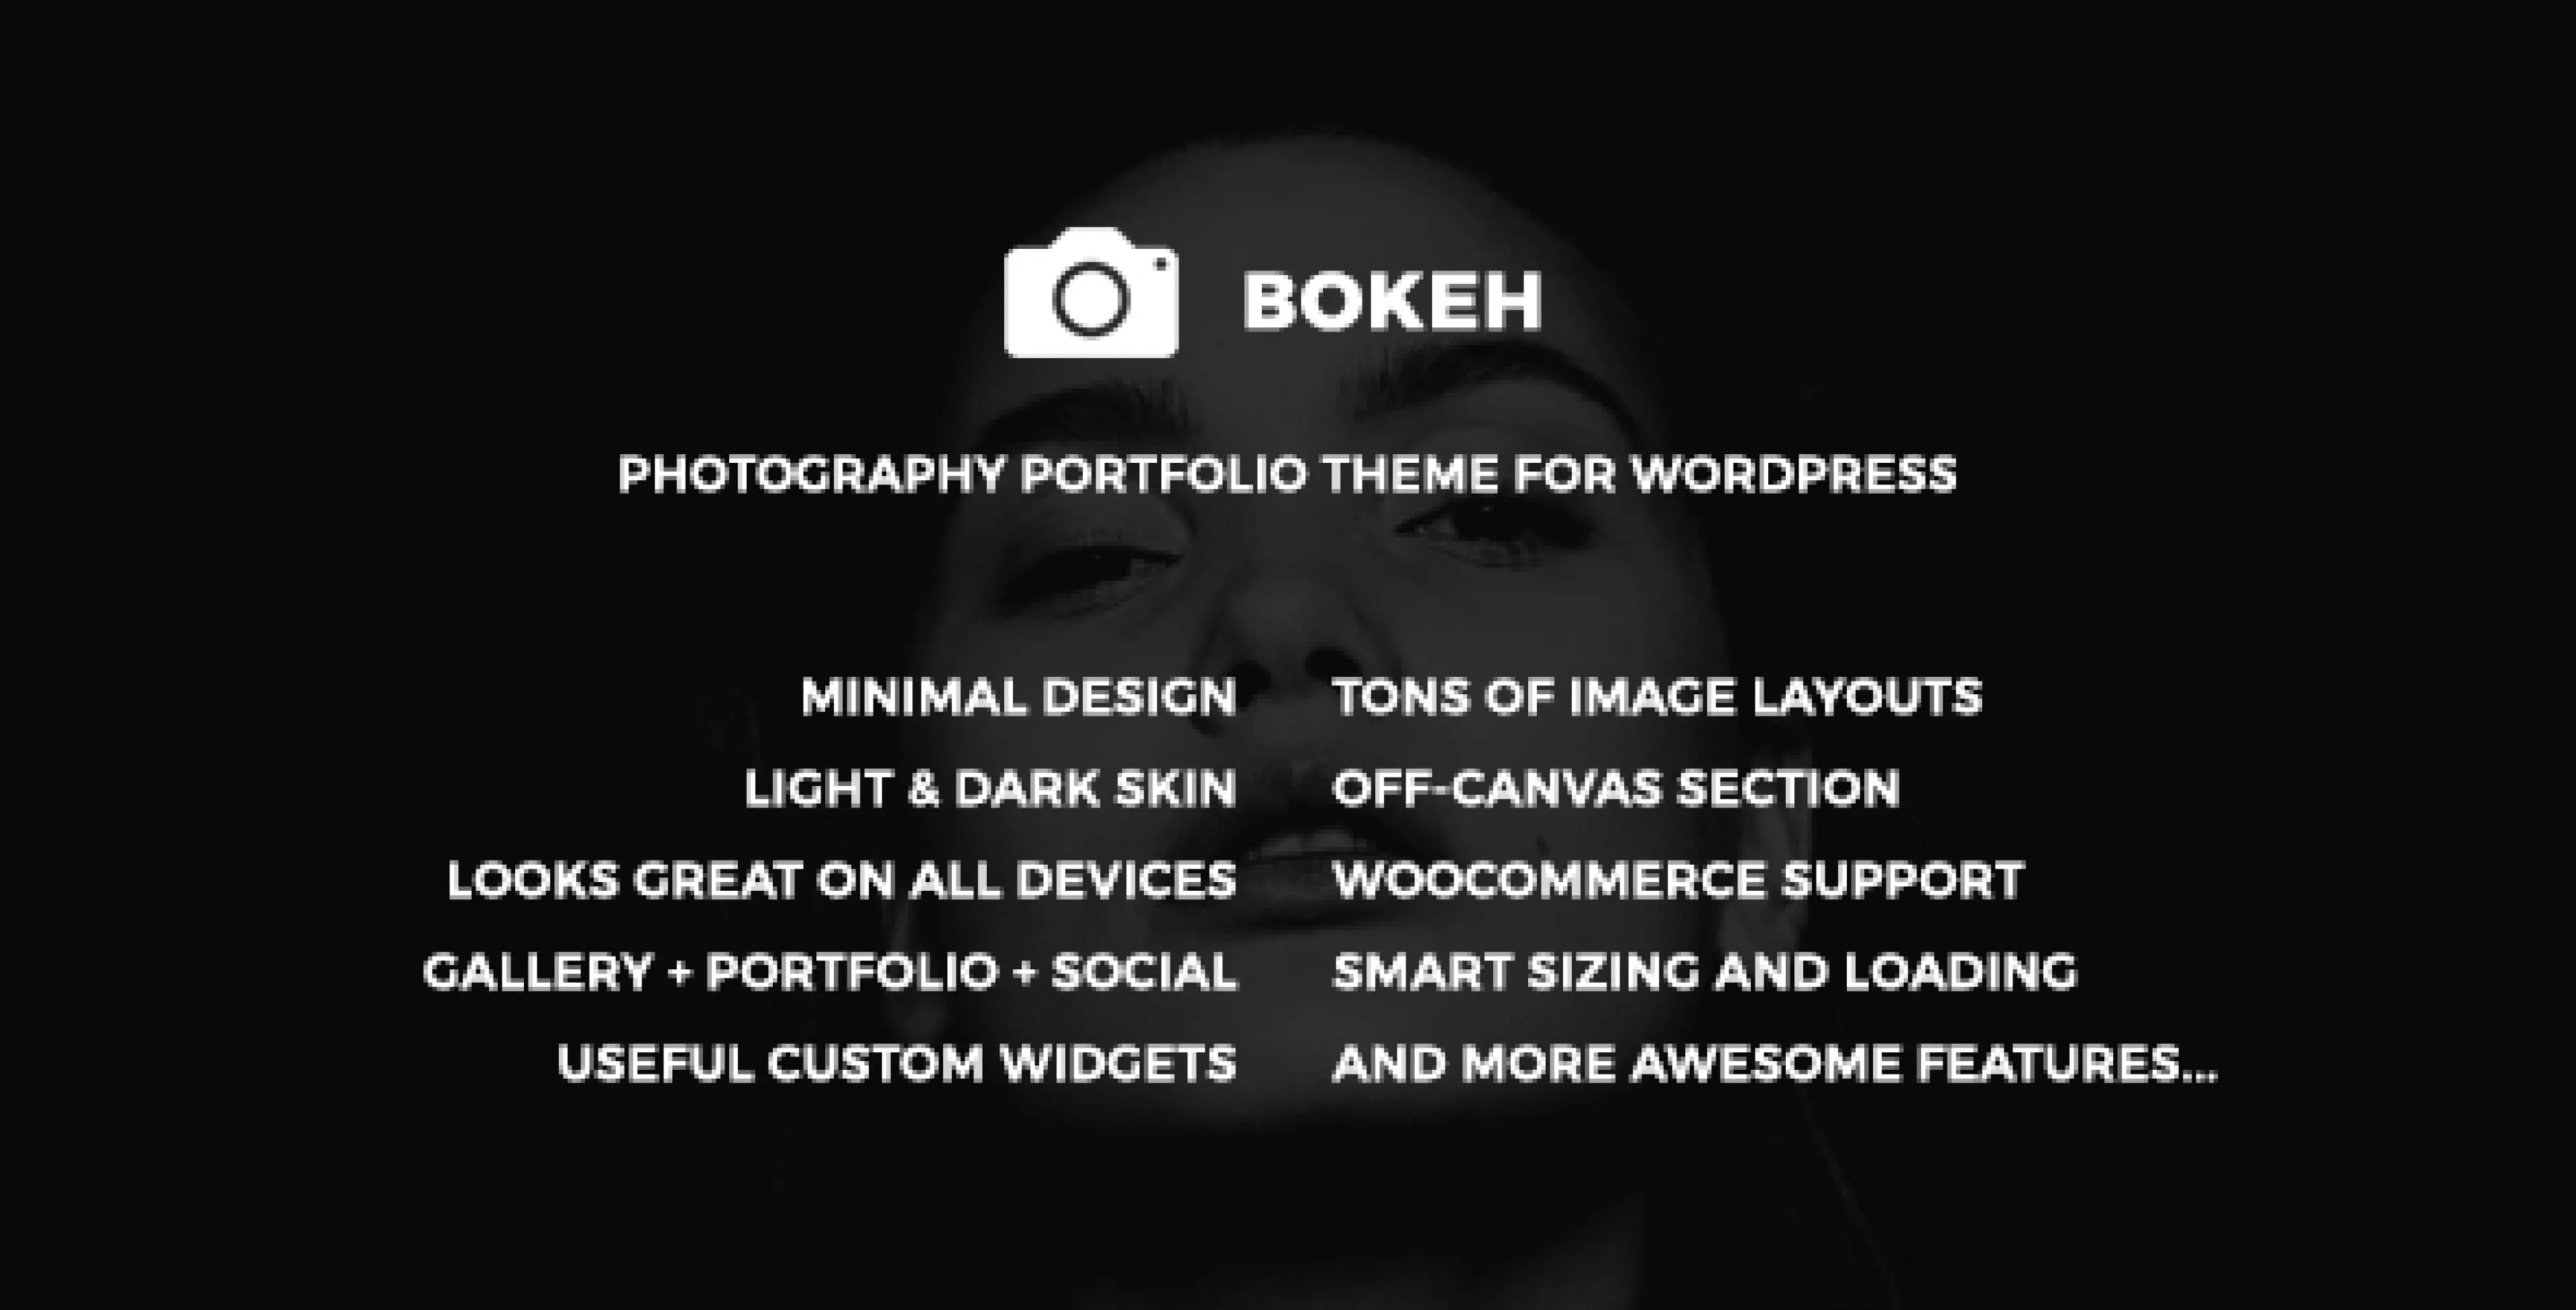 Bokeh - Photography Portfolio Theme for WordPress